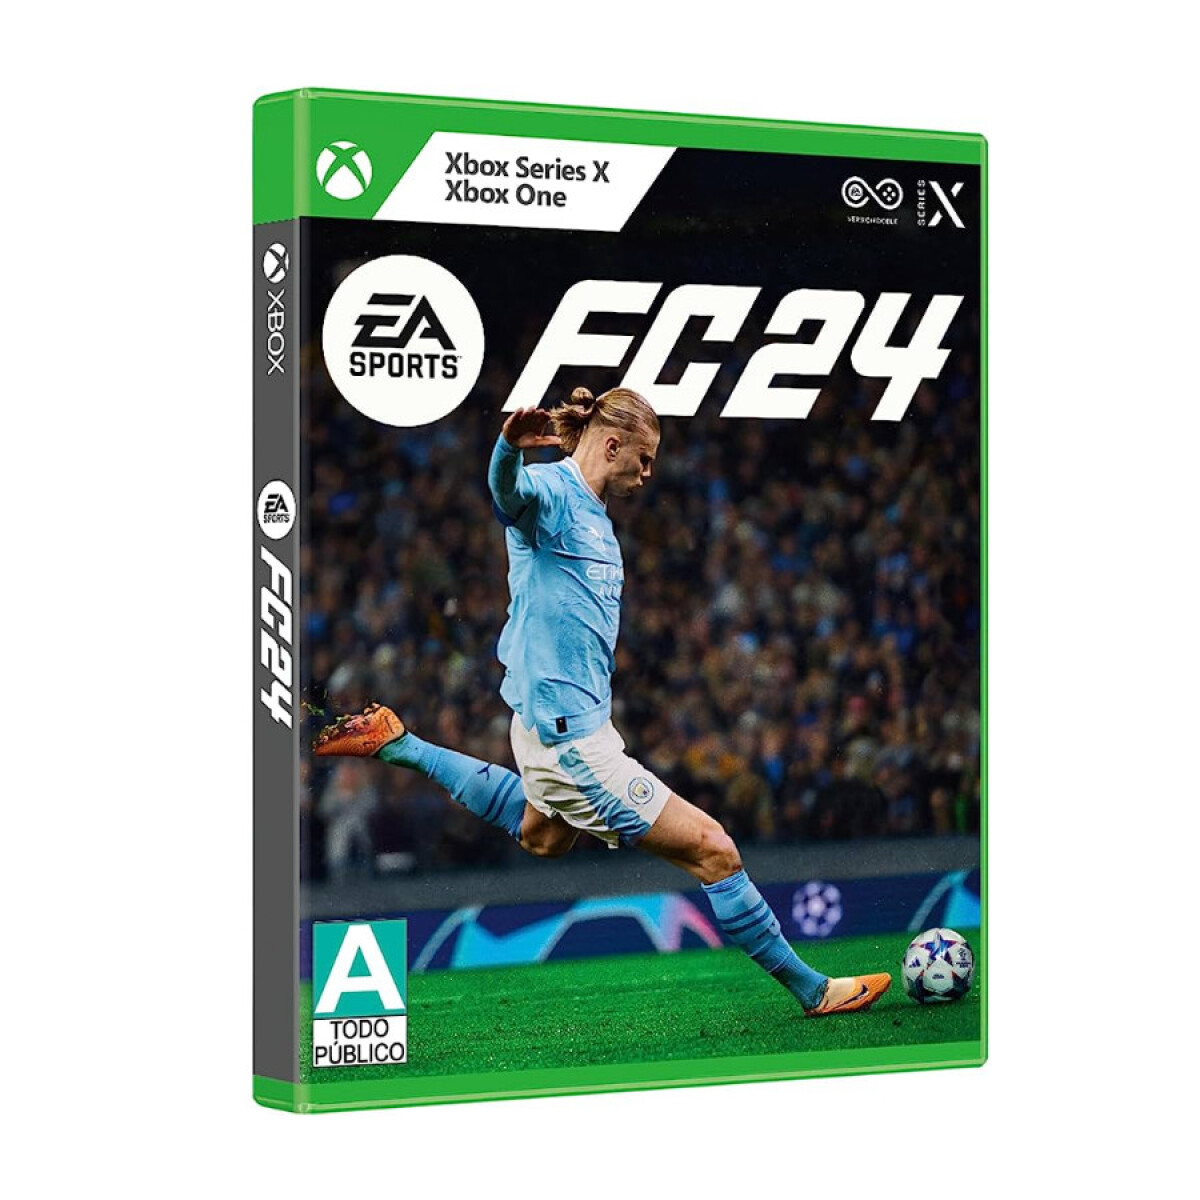 EA FC 24 (Nuevo FIFA) XBOX Series 